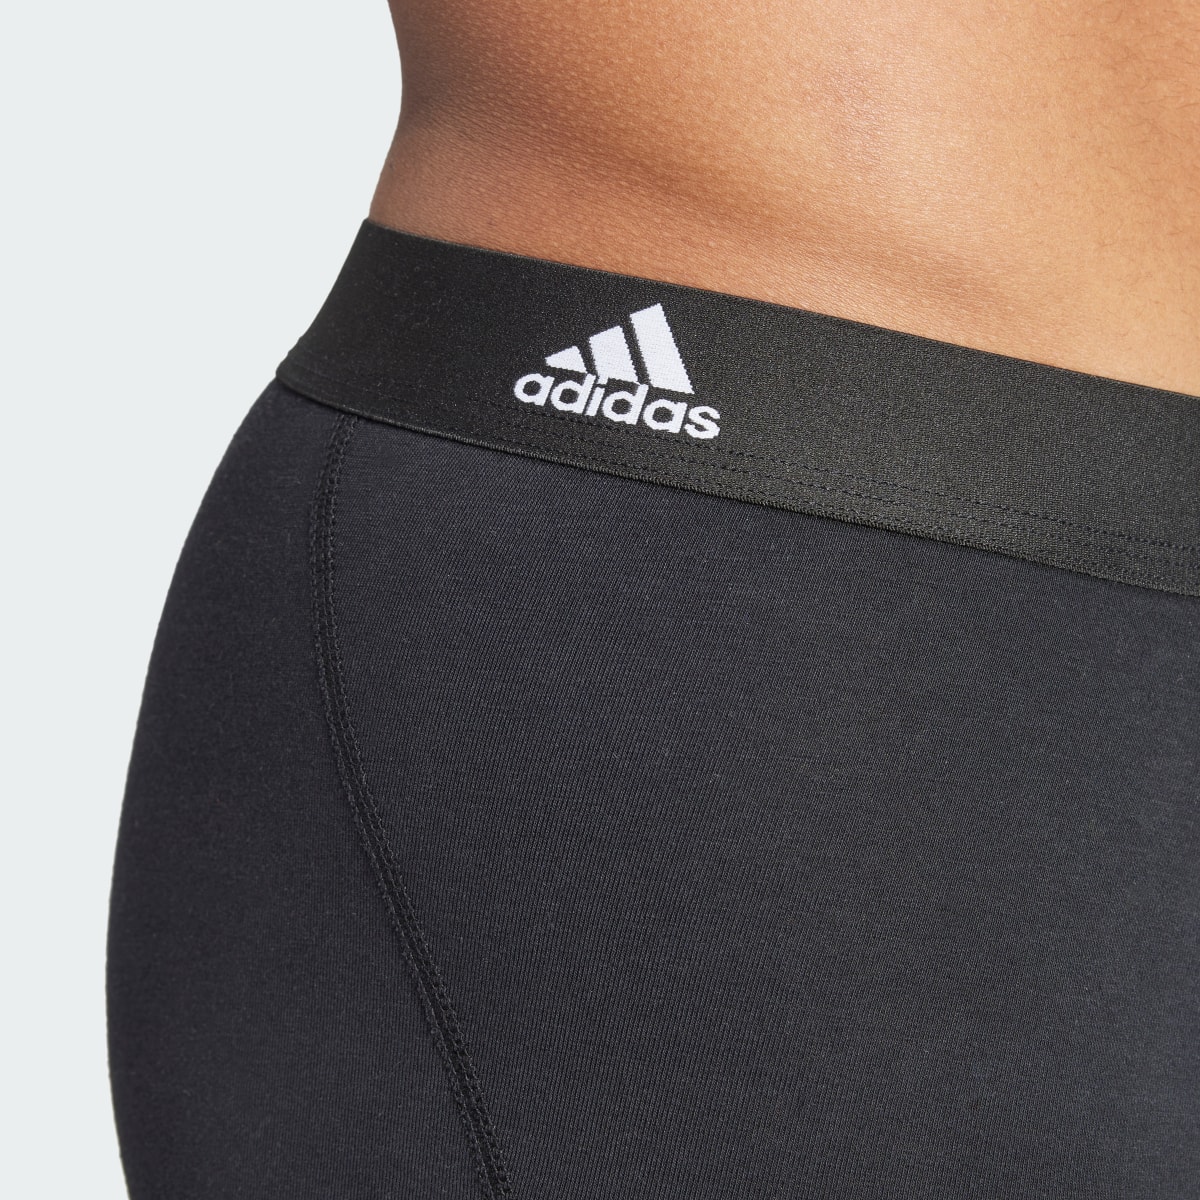 Adidas Active Flex Cotton Boxershorts, 3er-Pack – Unterwäsche. 8